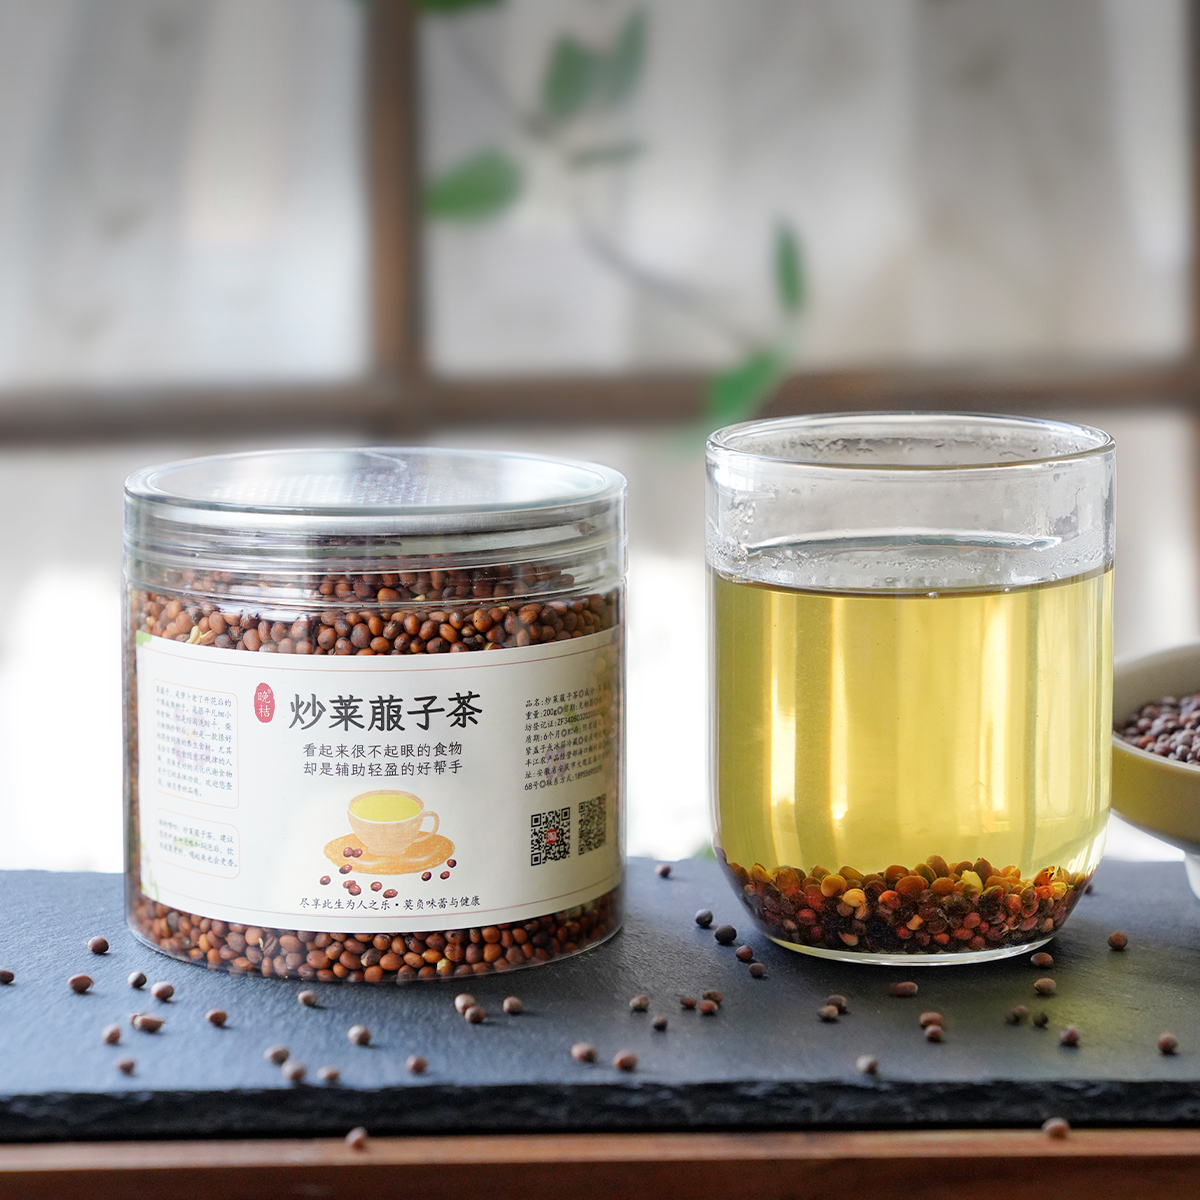 晚桔丨炒莱菔子茶 柴火铁锅炒制 吃撑吃腻积胀喝它很好轻盈养生茶